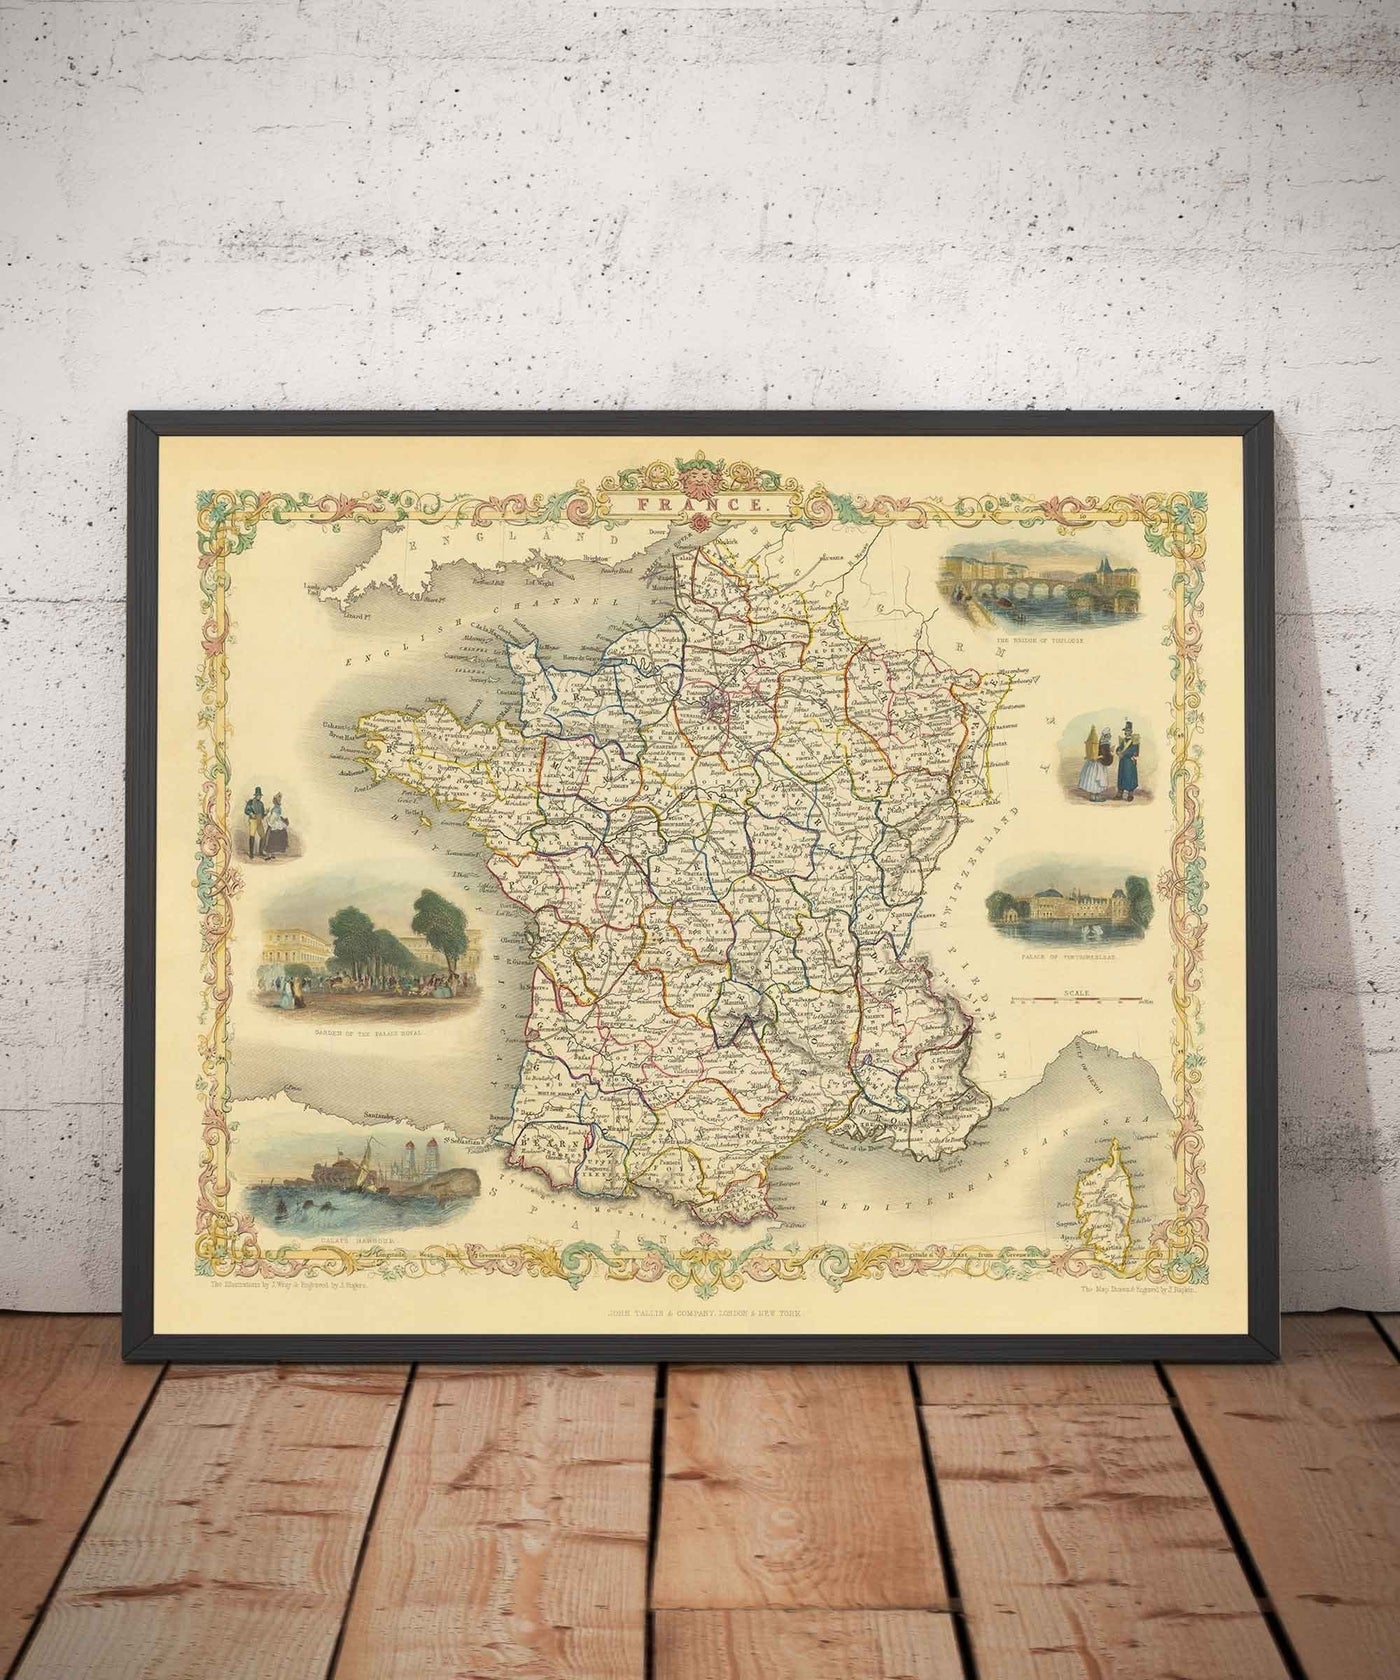 Alte Karte von Frankreich, 1851 von Tallis & Rapkin - Paris, Calais, Toulouse, Nizza, Bordeaux, Departements & Landkreise